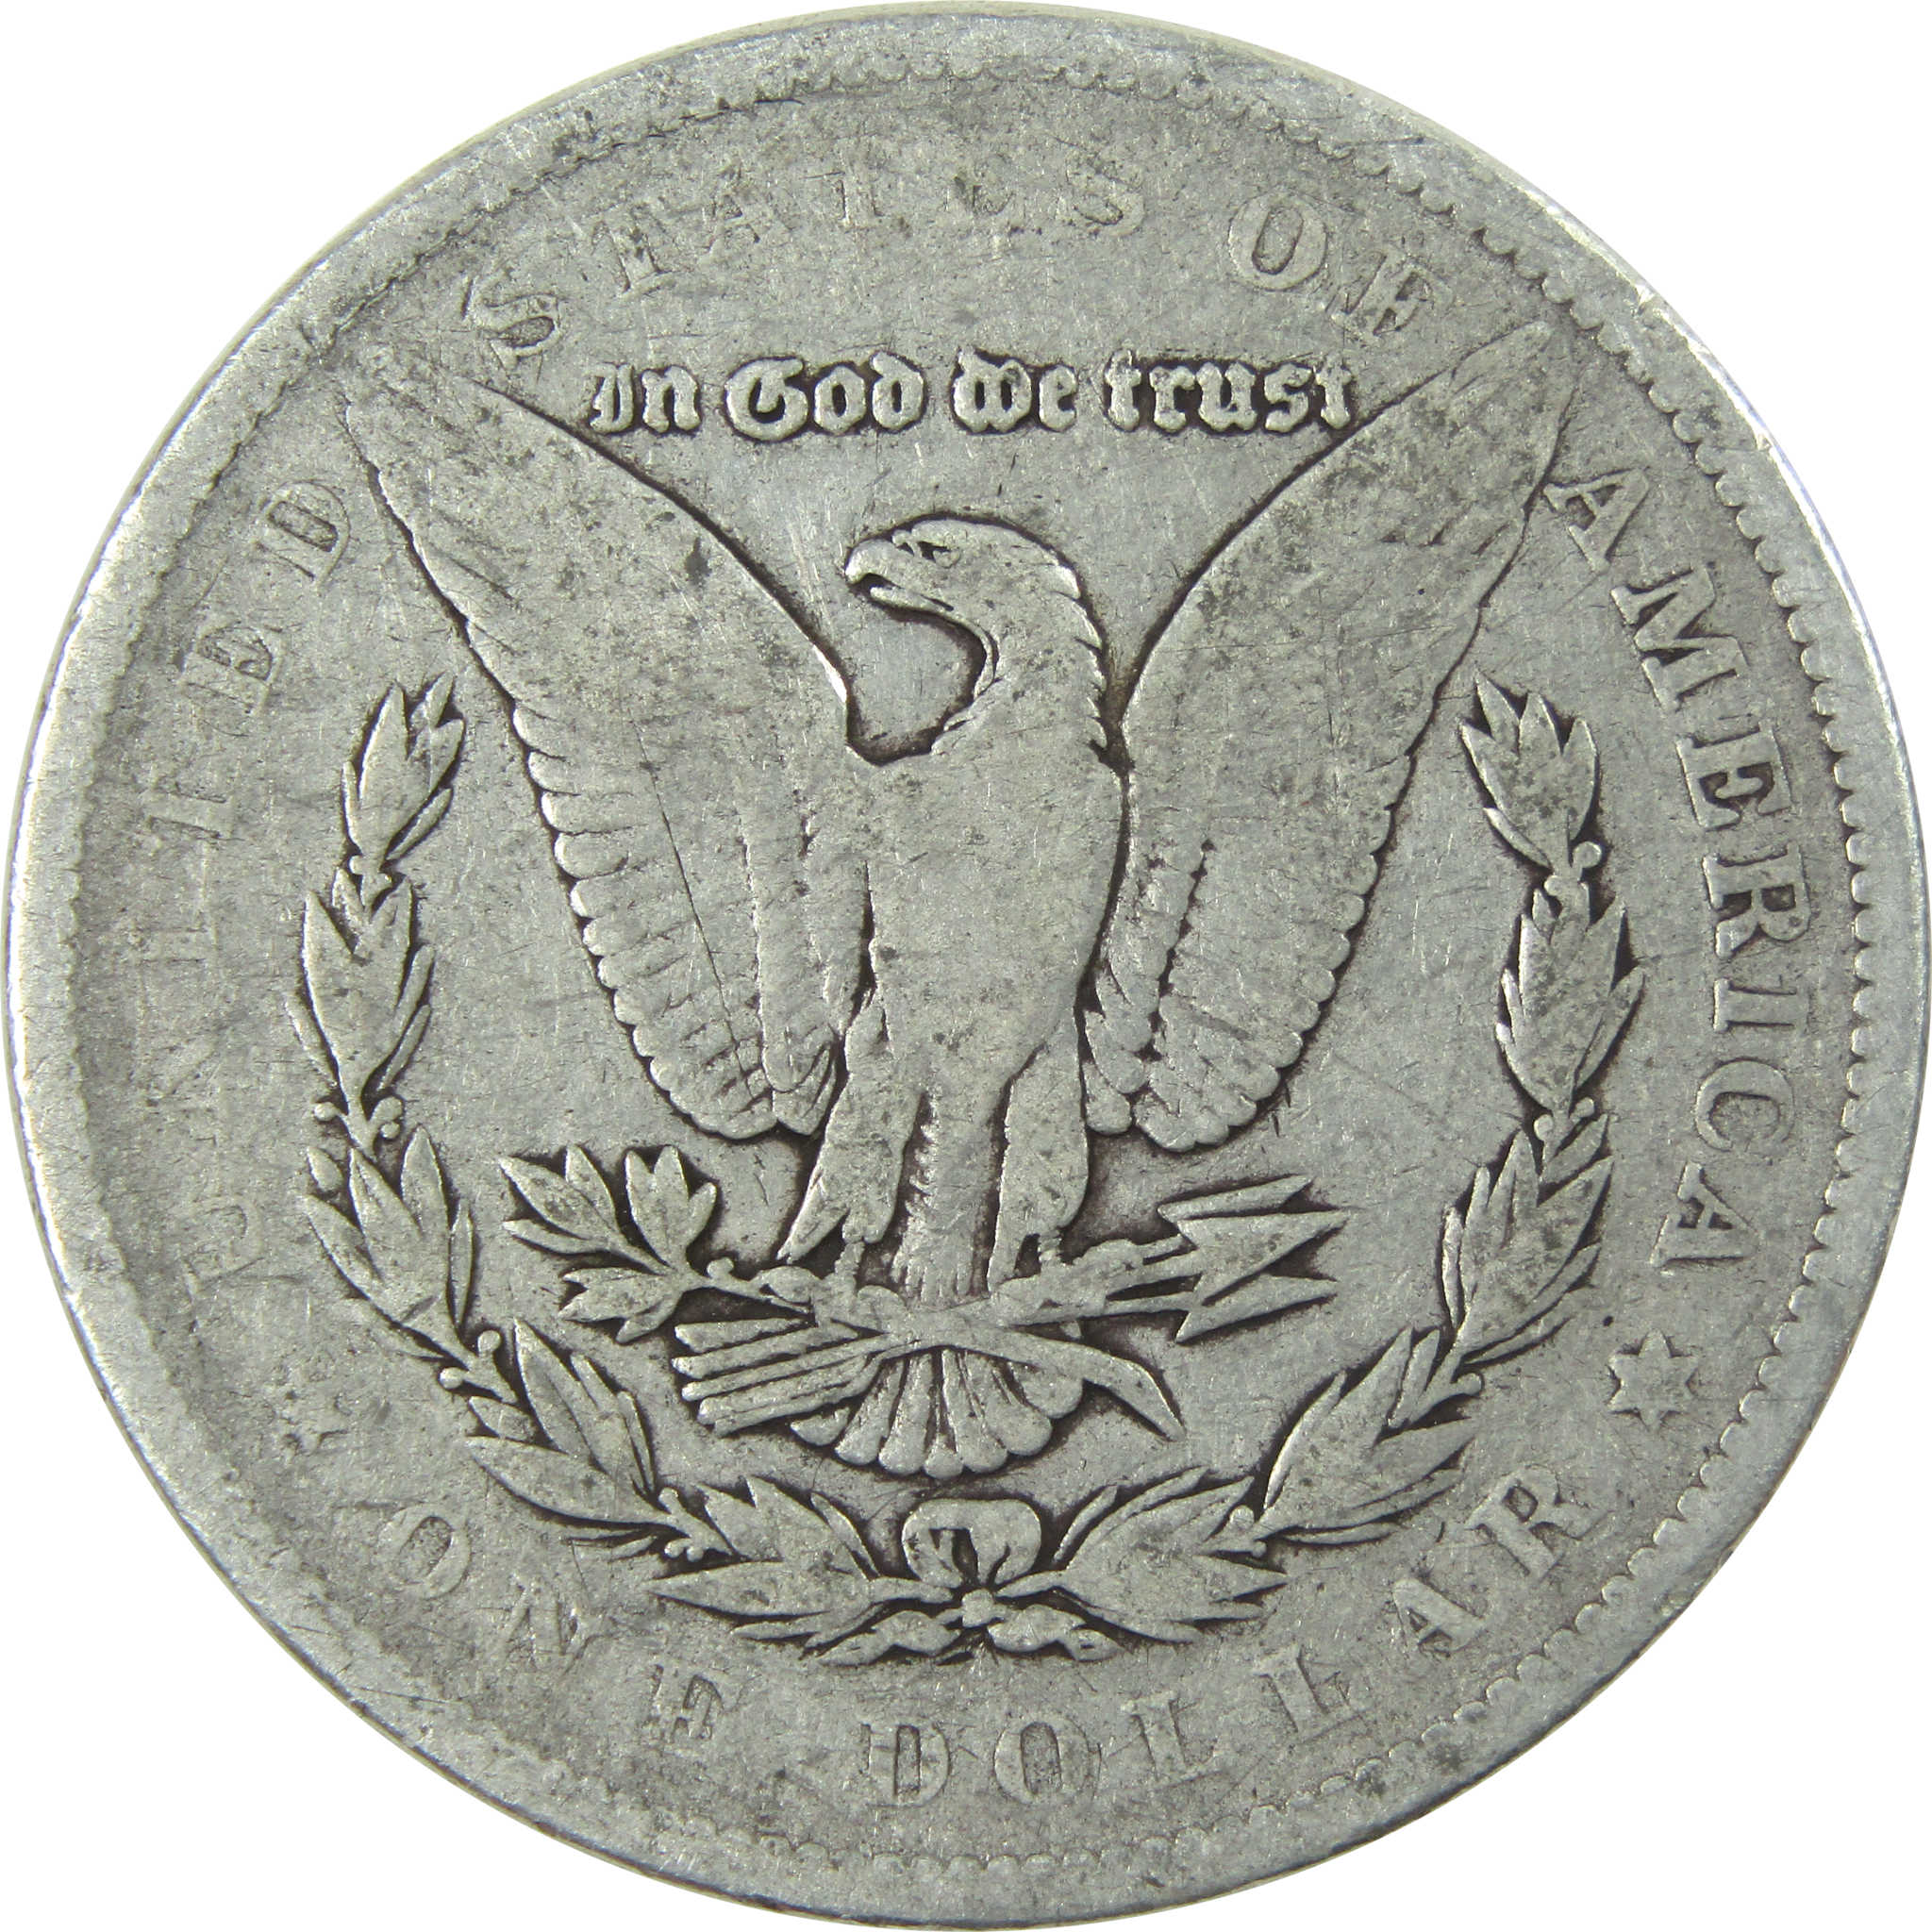 1878 7TF Rev 79 Morgan Dollar VG Very Good Silver $1 Coin SKU:I13908 - Morgan coin - Morgan silver dollar - Morgan silver dollar for sale - Profile Coins &amp; Collectibles